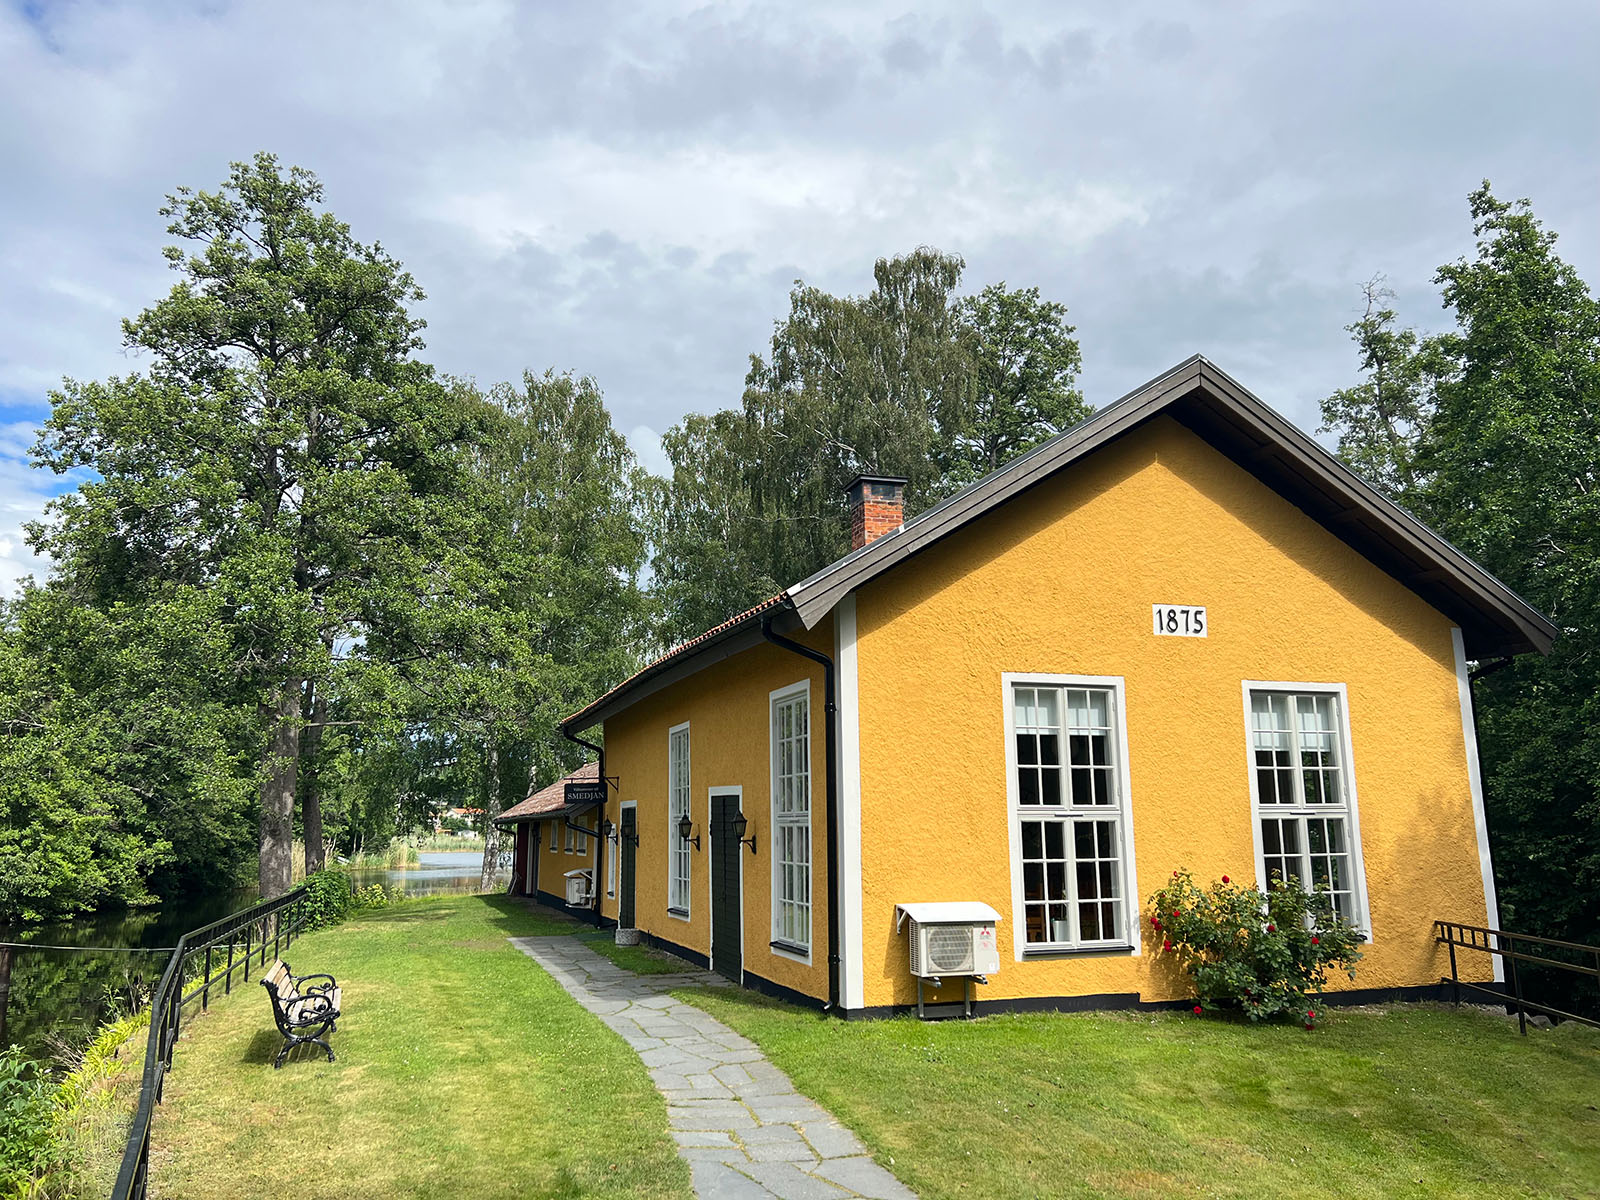 Festlokalen Smedjan med nyrenoverad fasad i augusti 2022.